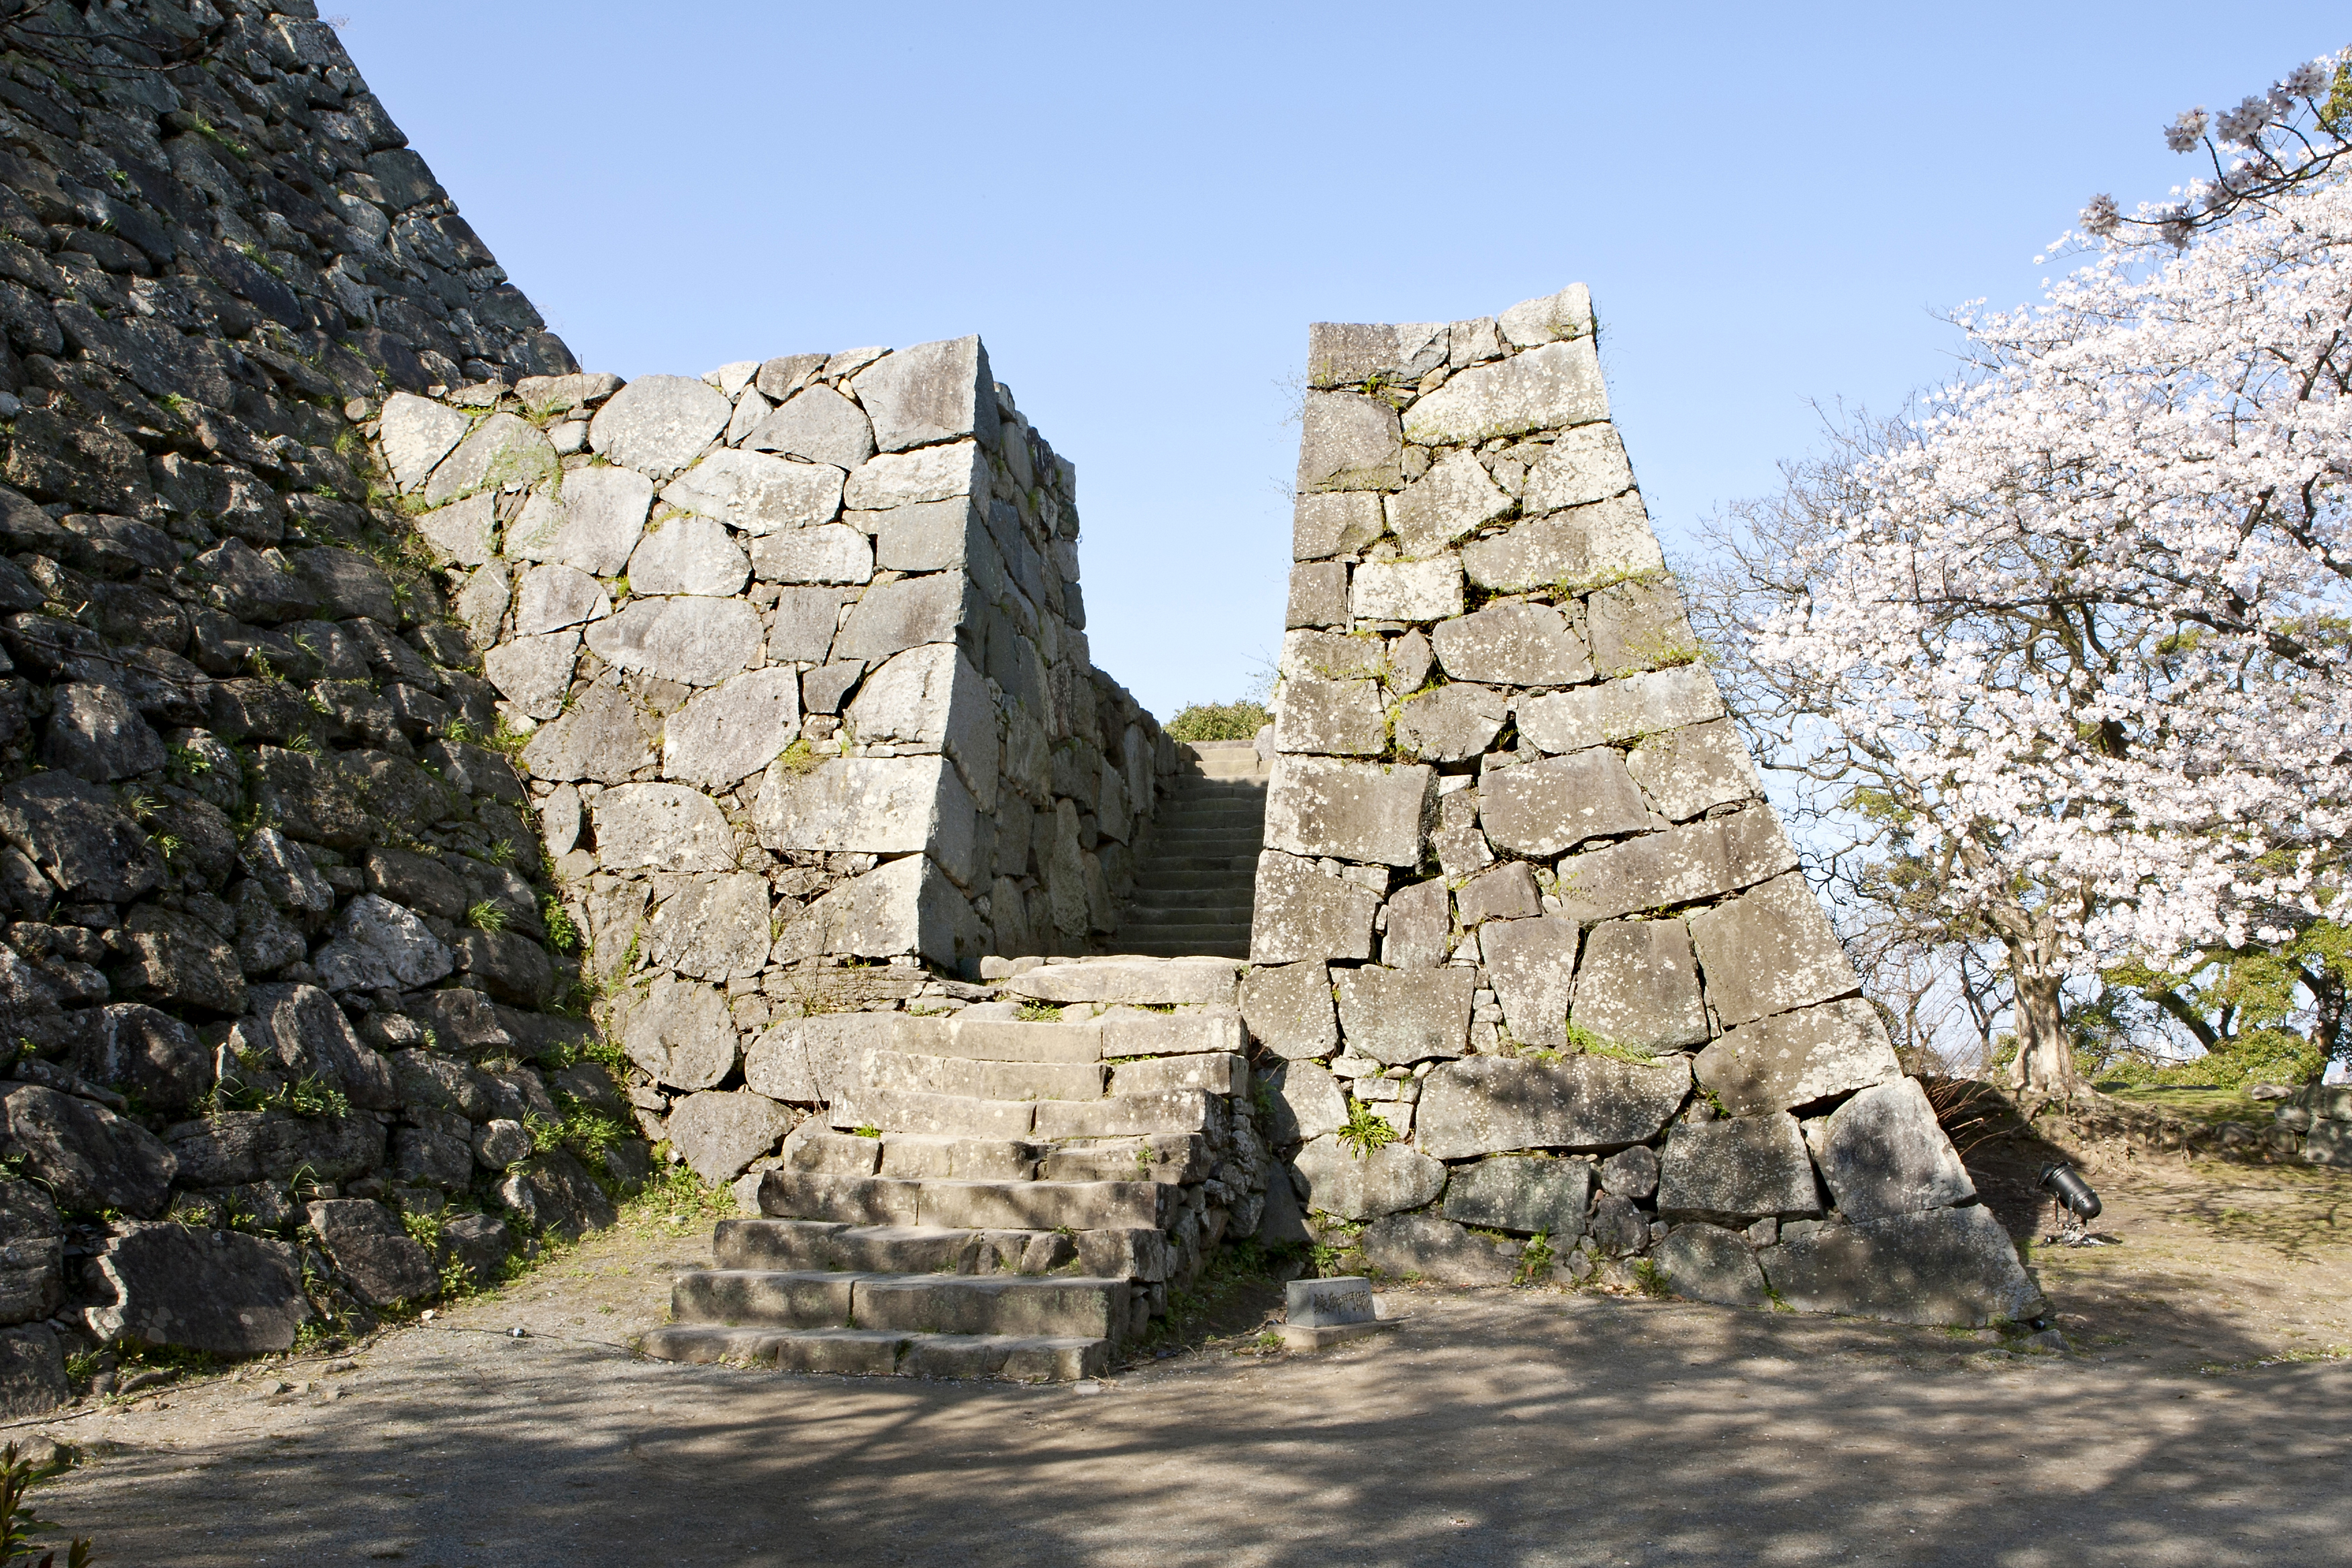 福岡城跡・鉄御門跡(2012)の画像